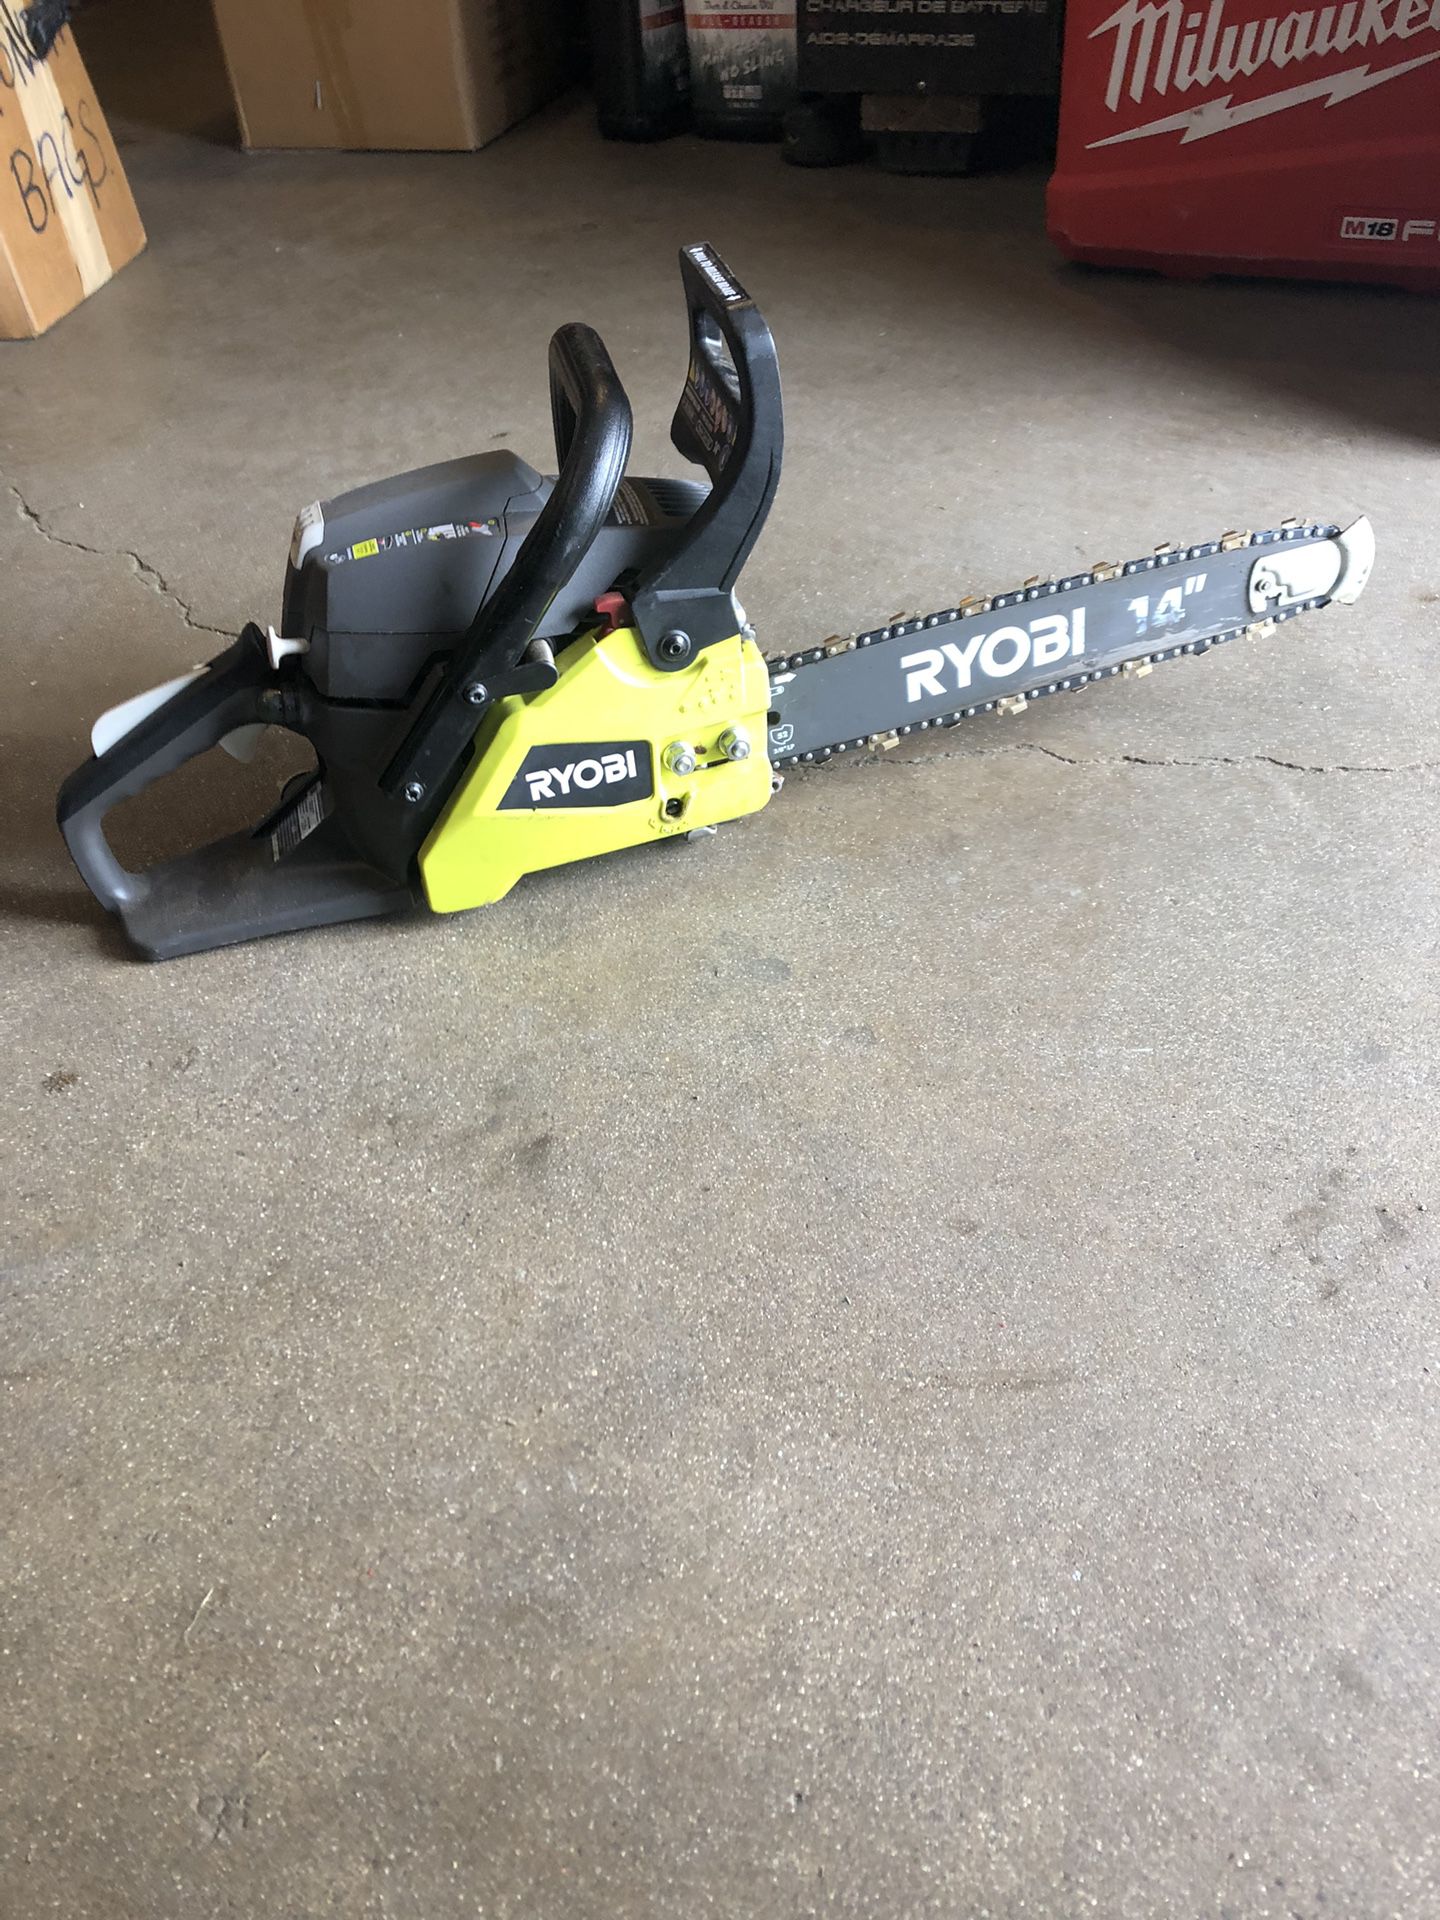 14”RYOBI chainsaw 